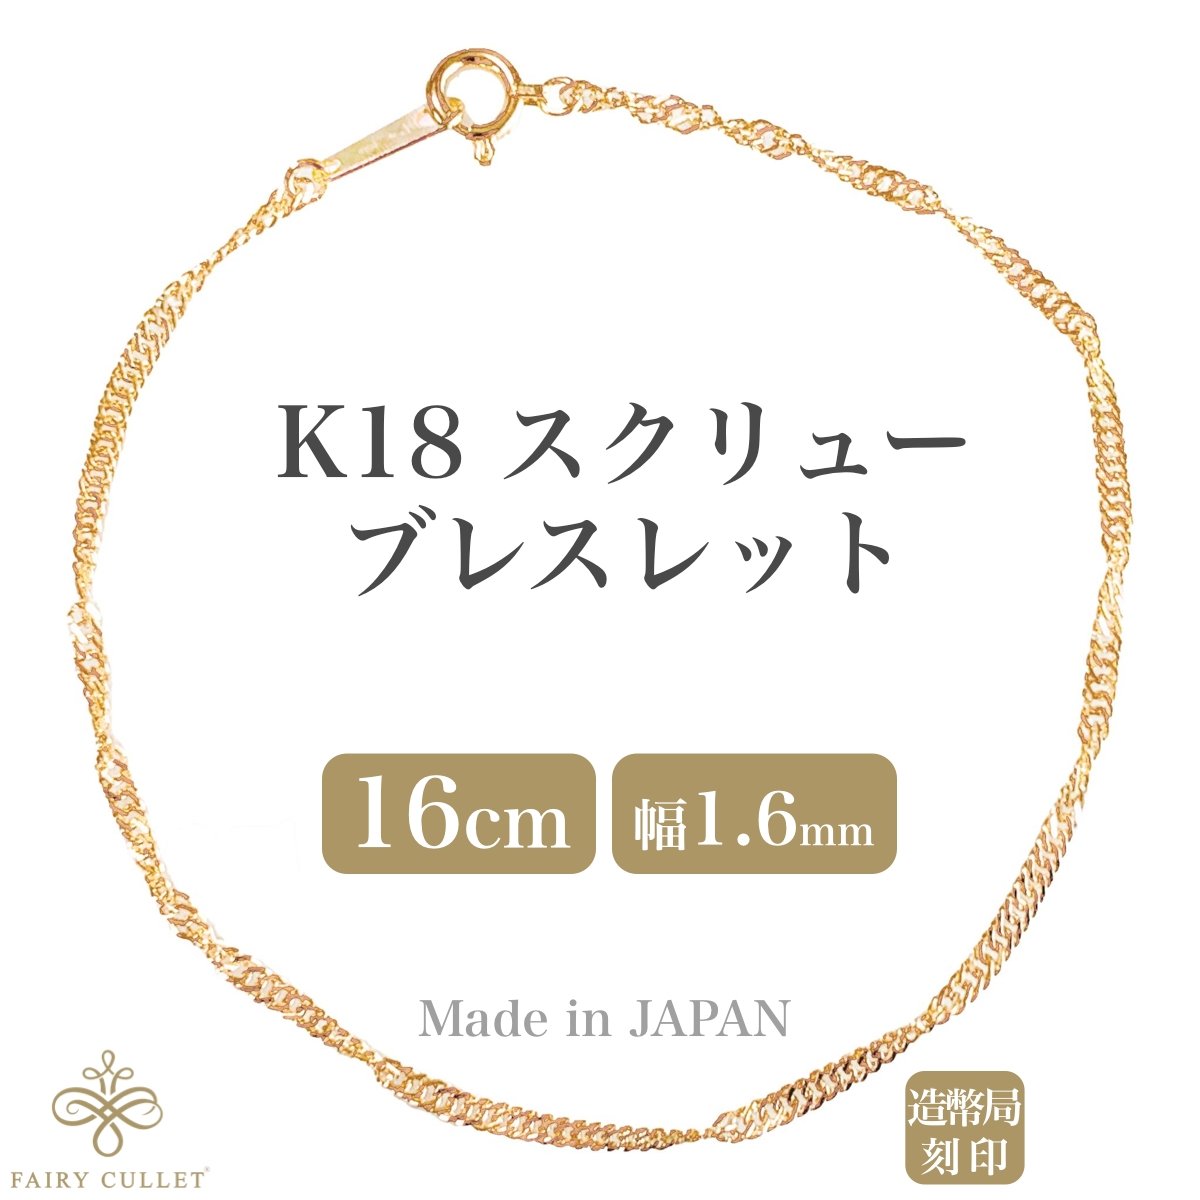 18金ブレスレット K18 スクリューチェーン 16cm 1.6mm幅 日本製 検定印 - 喜平ジュエリーの専門店 FAIRY CULLET(フェアリーカレット)